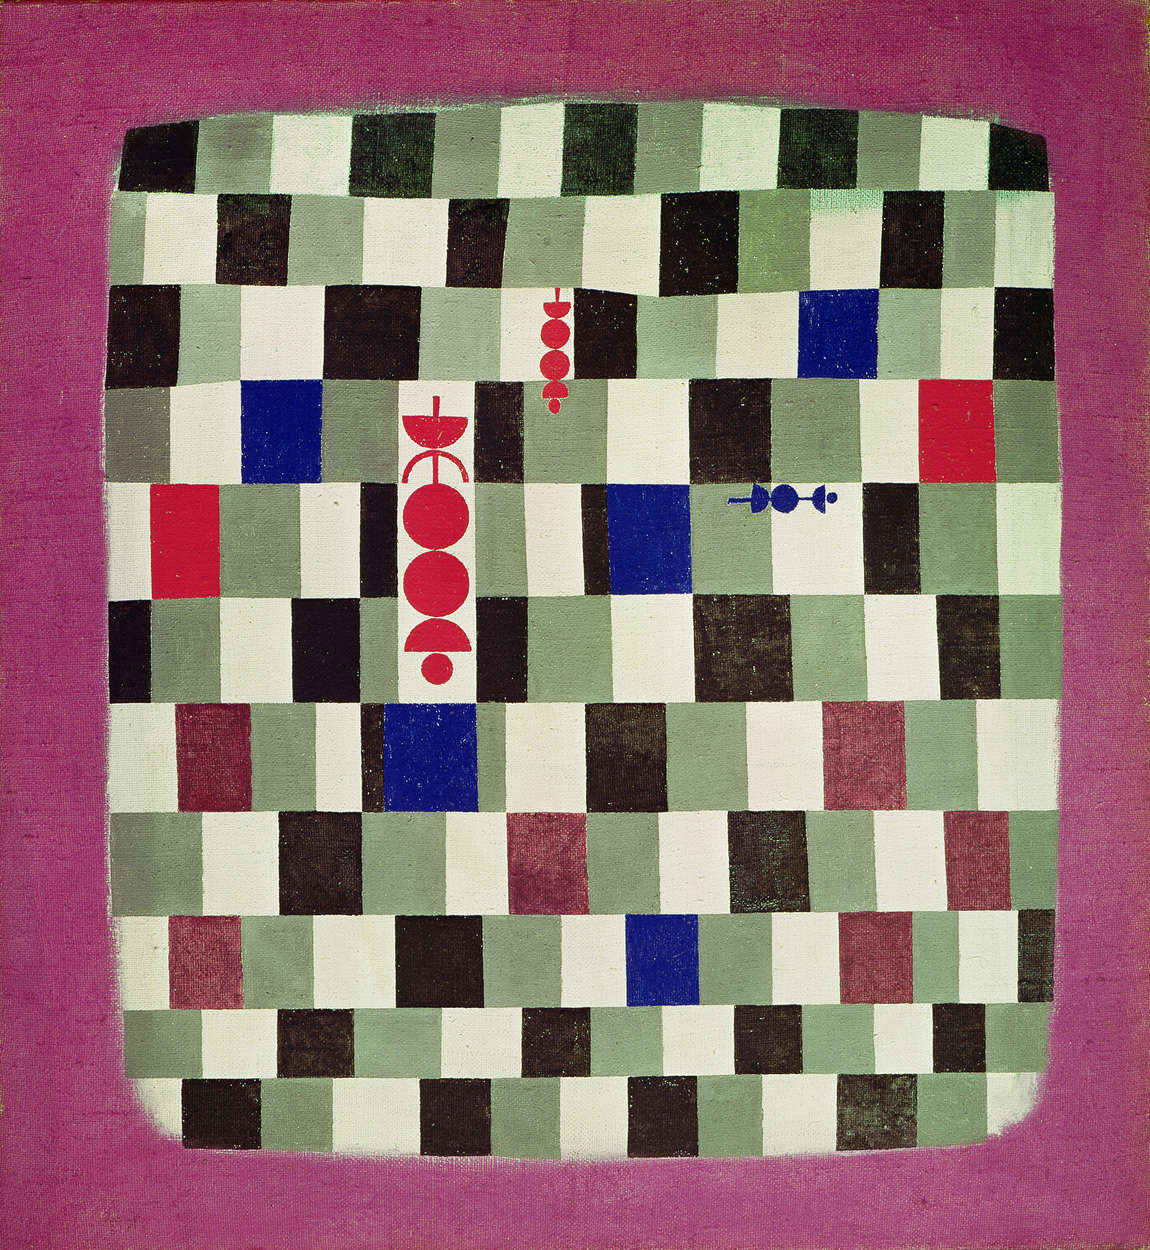             Fotobehang "Überschach" van Paul Klee
        